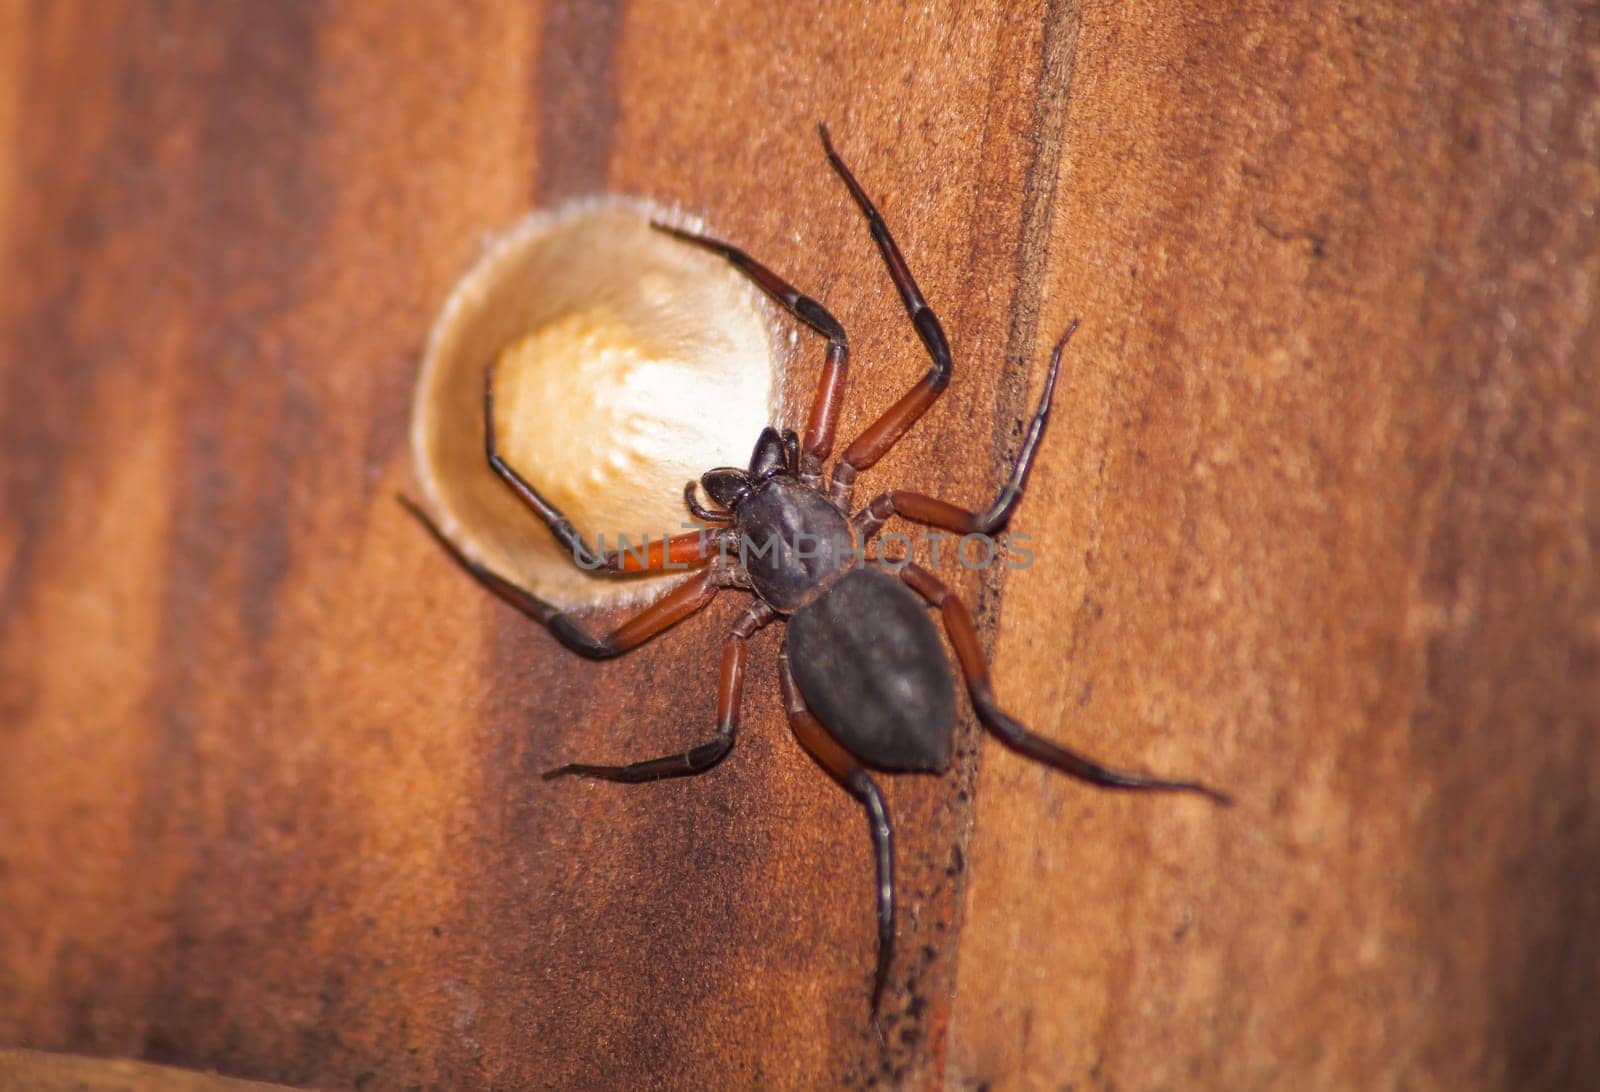 Scorpion Spider (Platyoides walteri) 13163 by kobus_peche